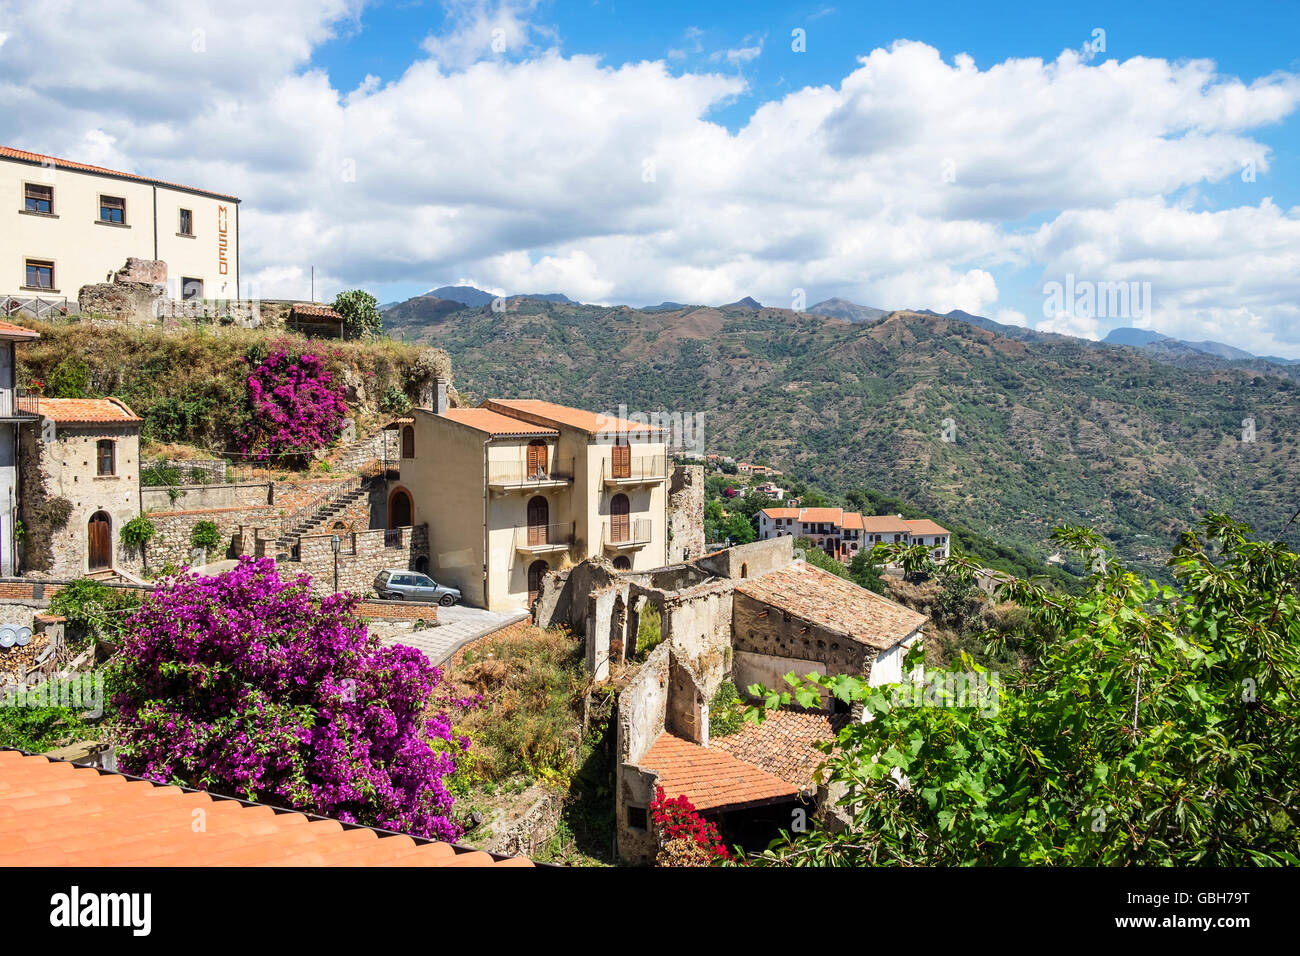 Le village médiéval de Savoca dans les Monts Peloritani près de Messine sur l'île italienne de Sicile Banque D'Images